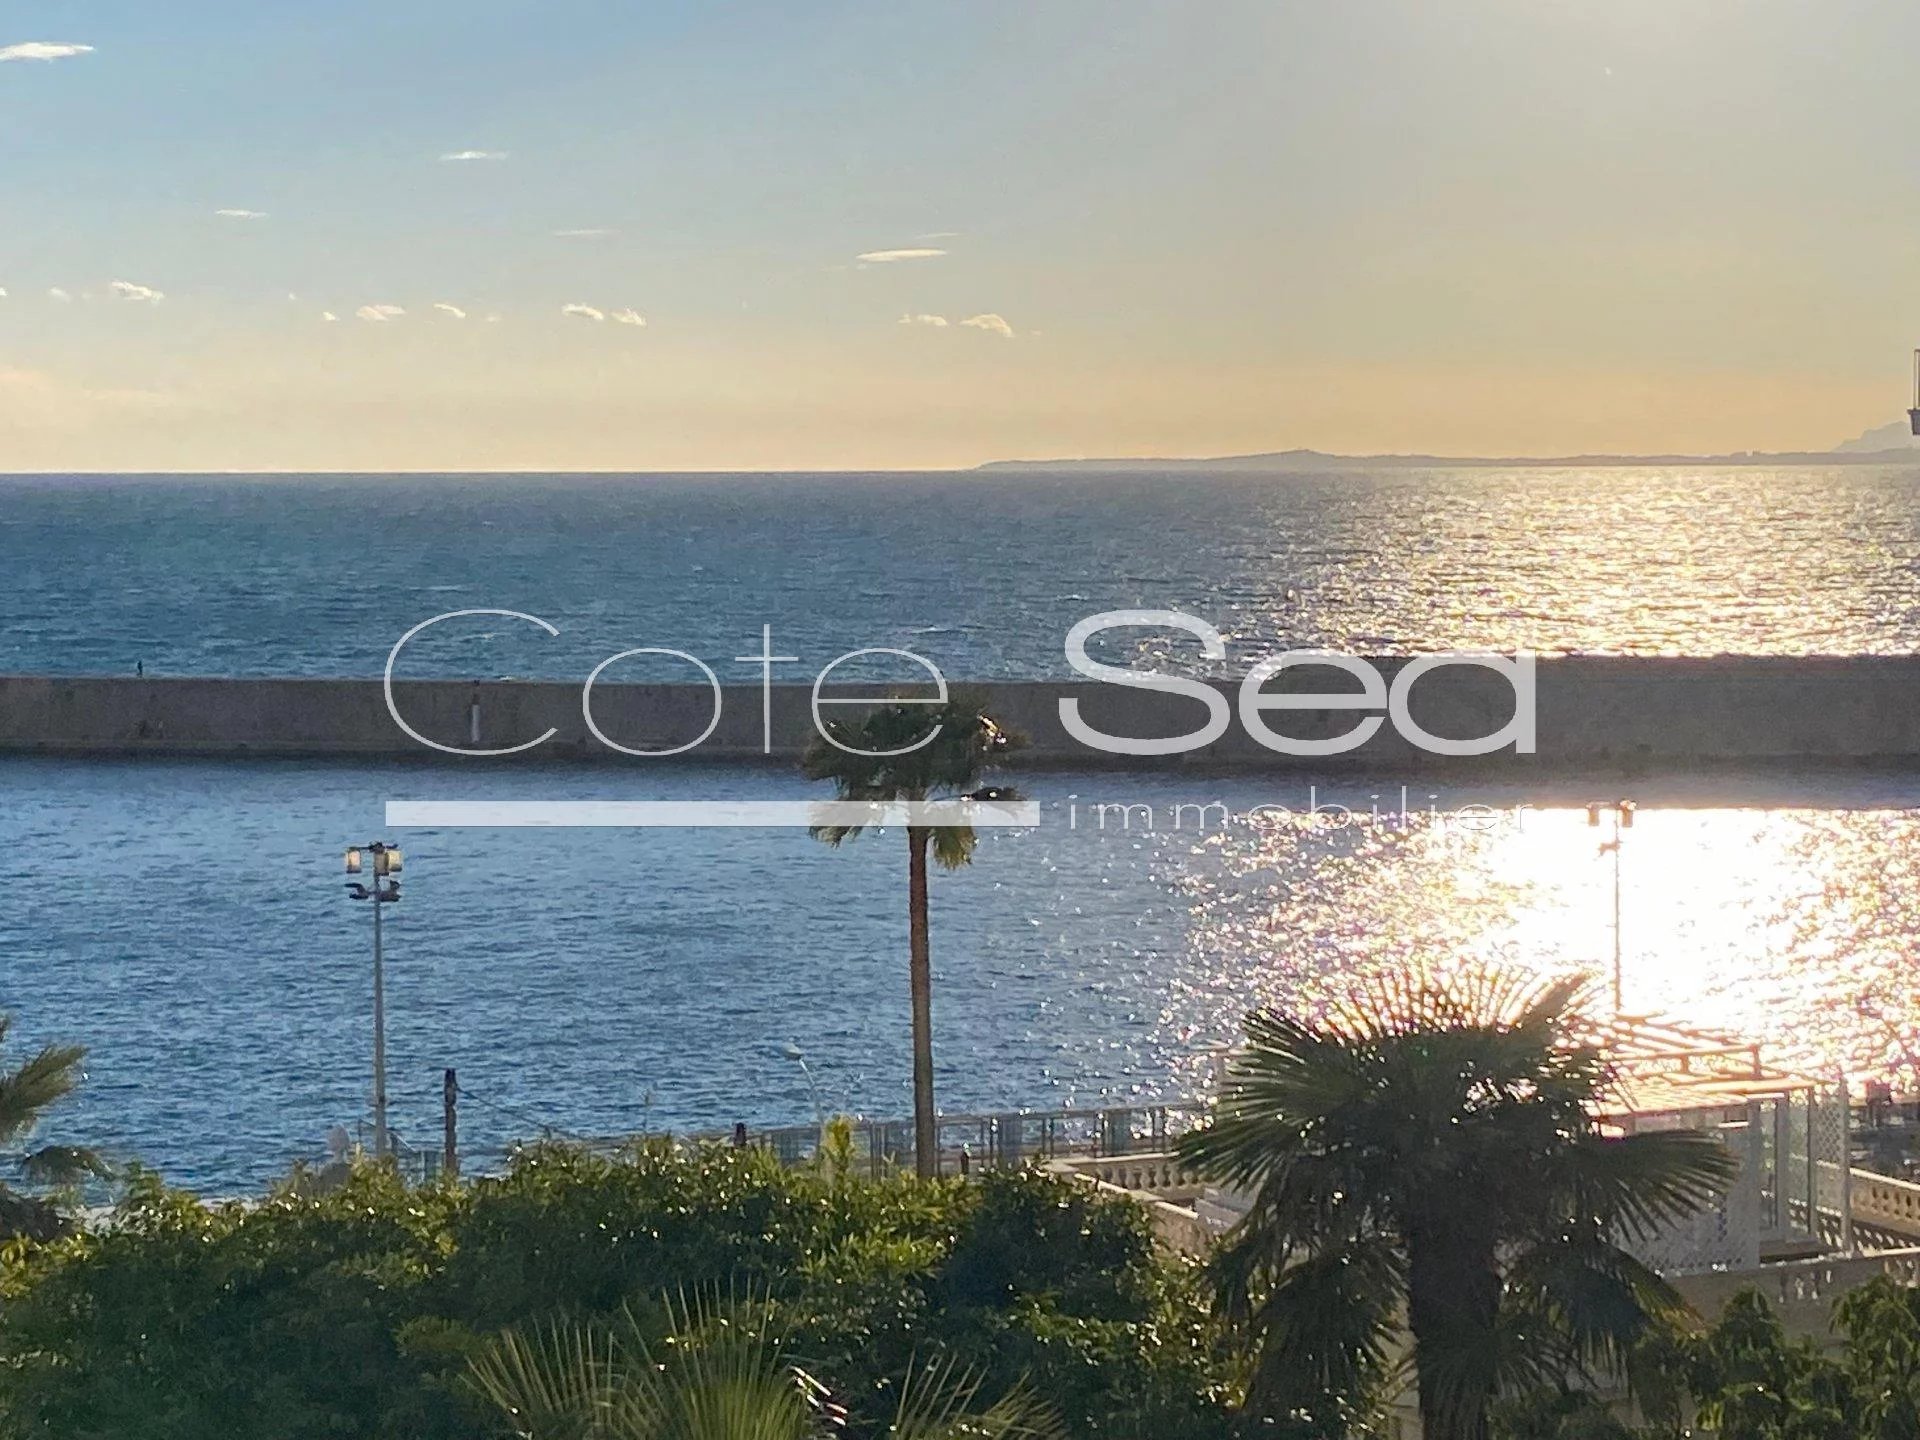 Vente Appartement 85m² 3 Pièces à Nice (06300) - Cote Sea Immobilier